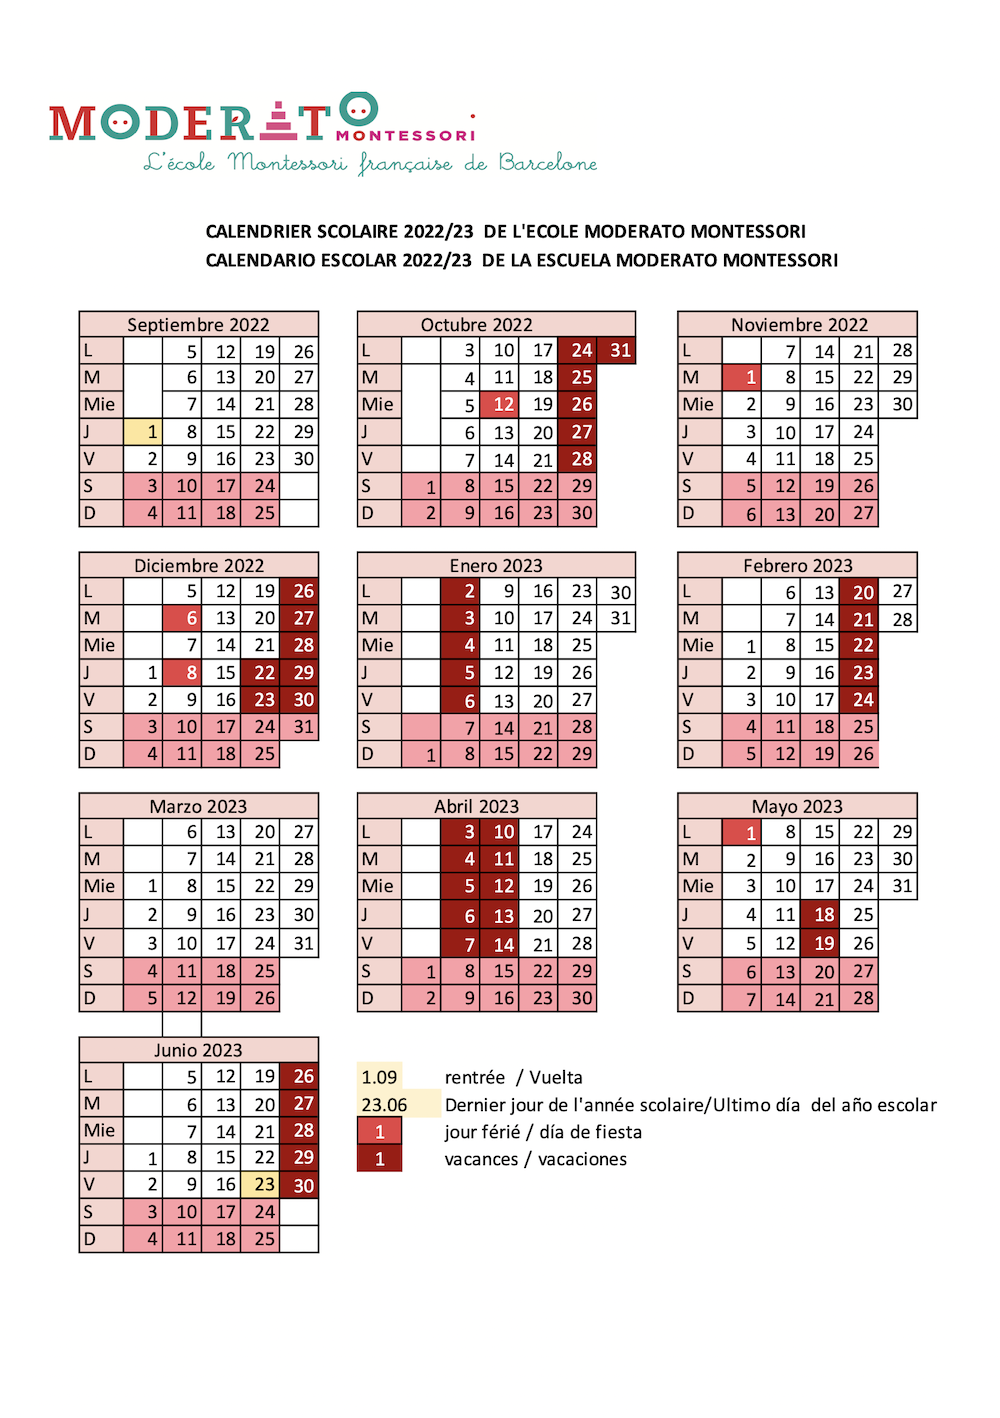 Calendario Scolaire 2022-23 - Moderato Montessori